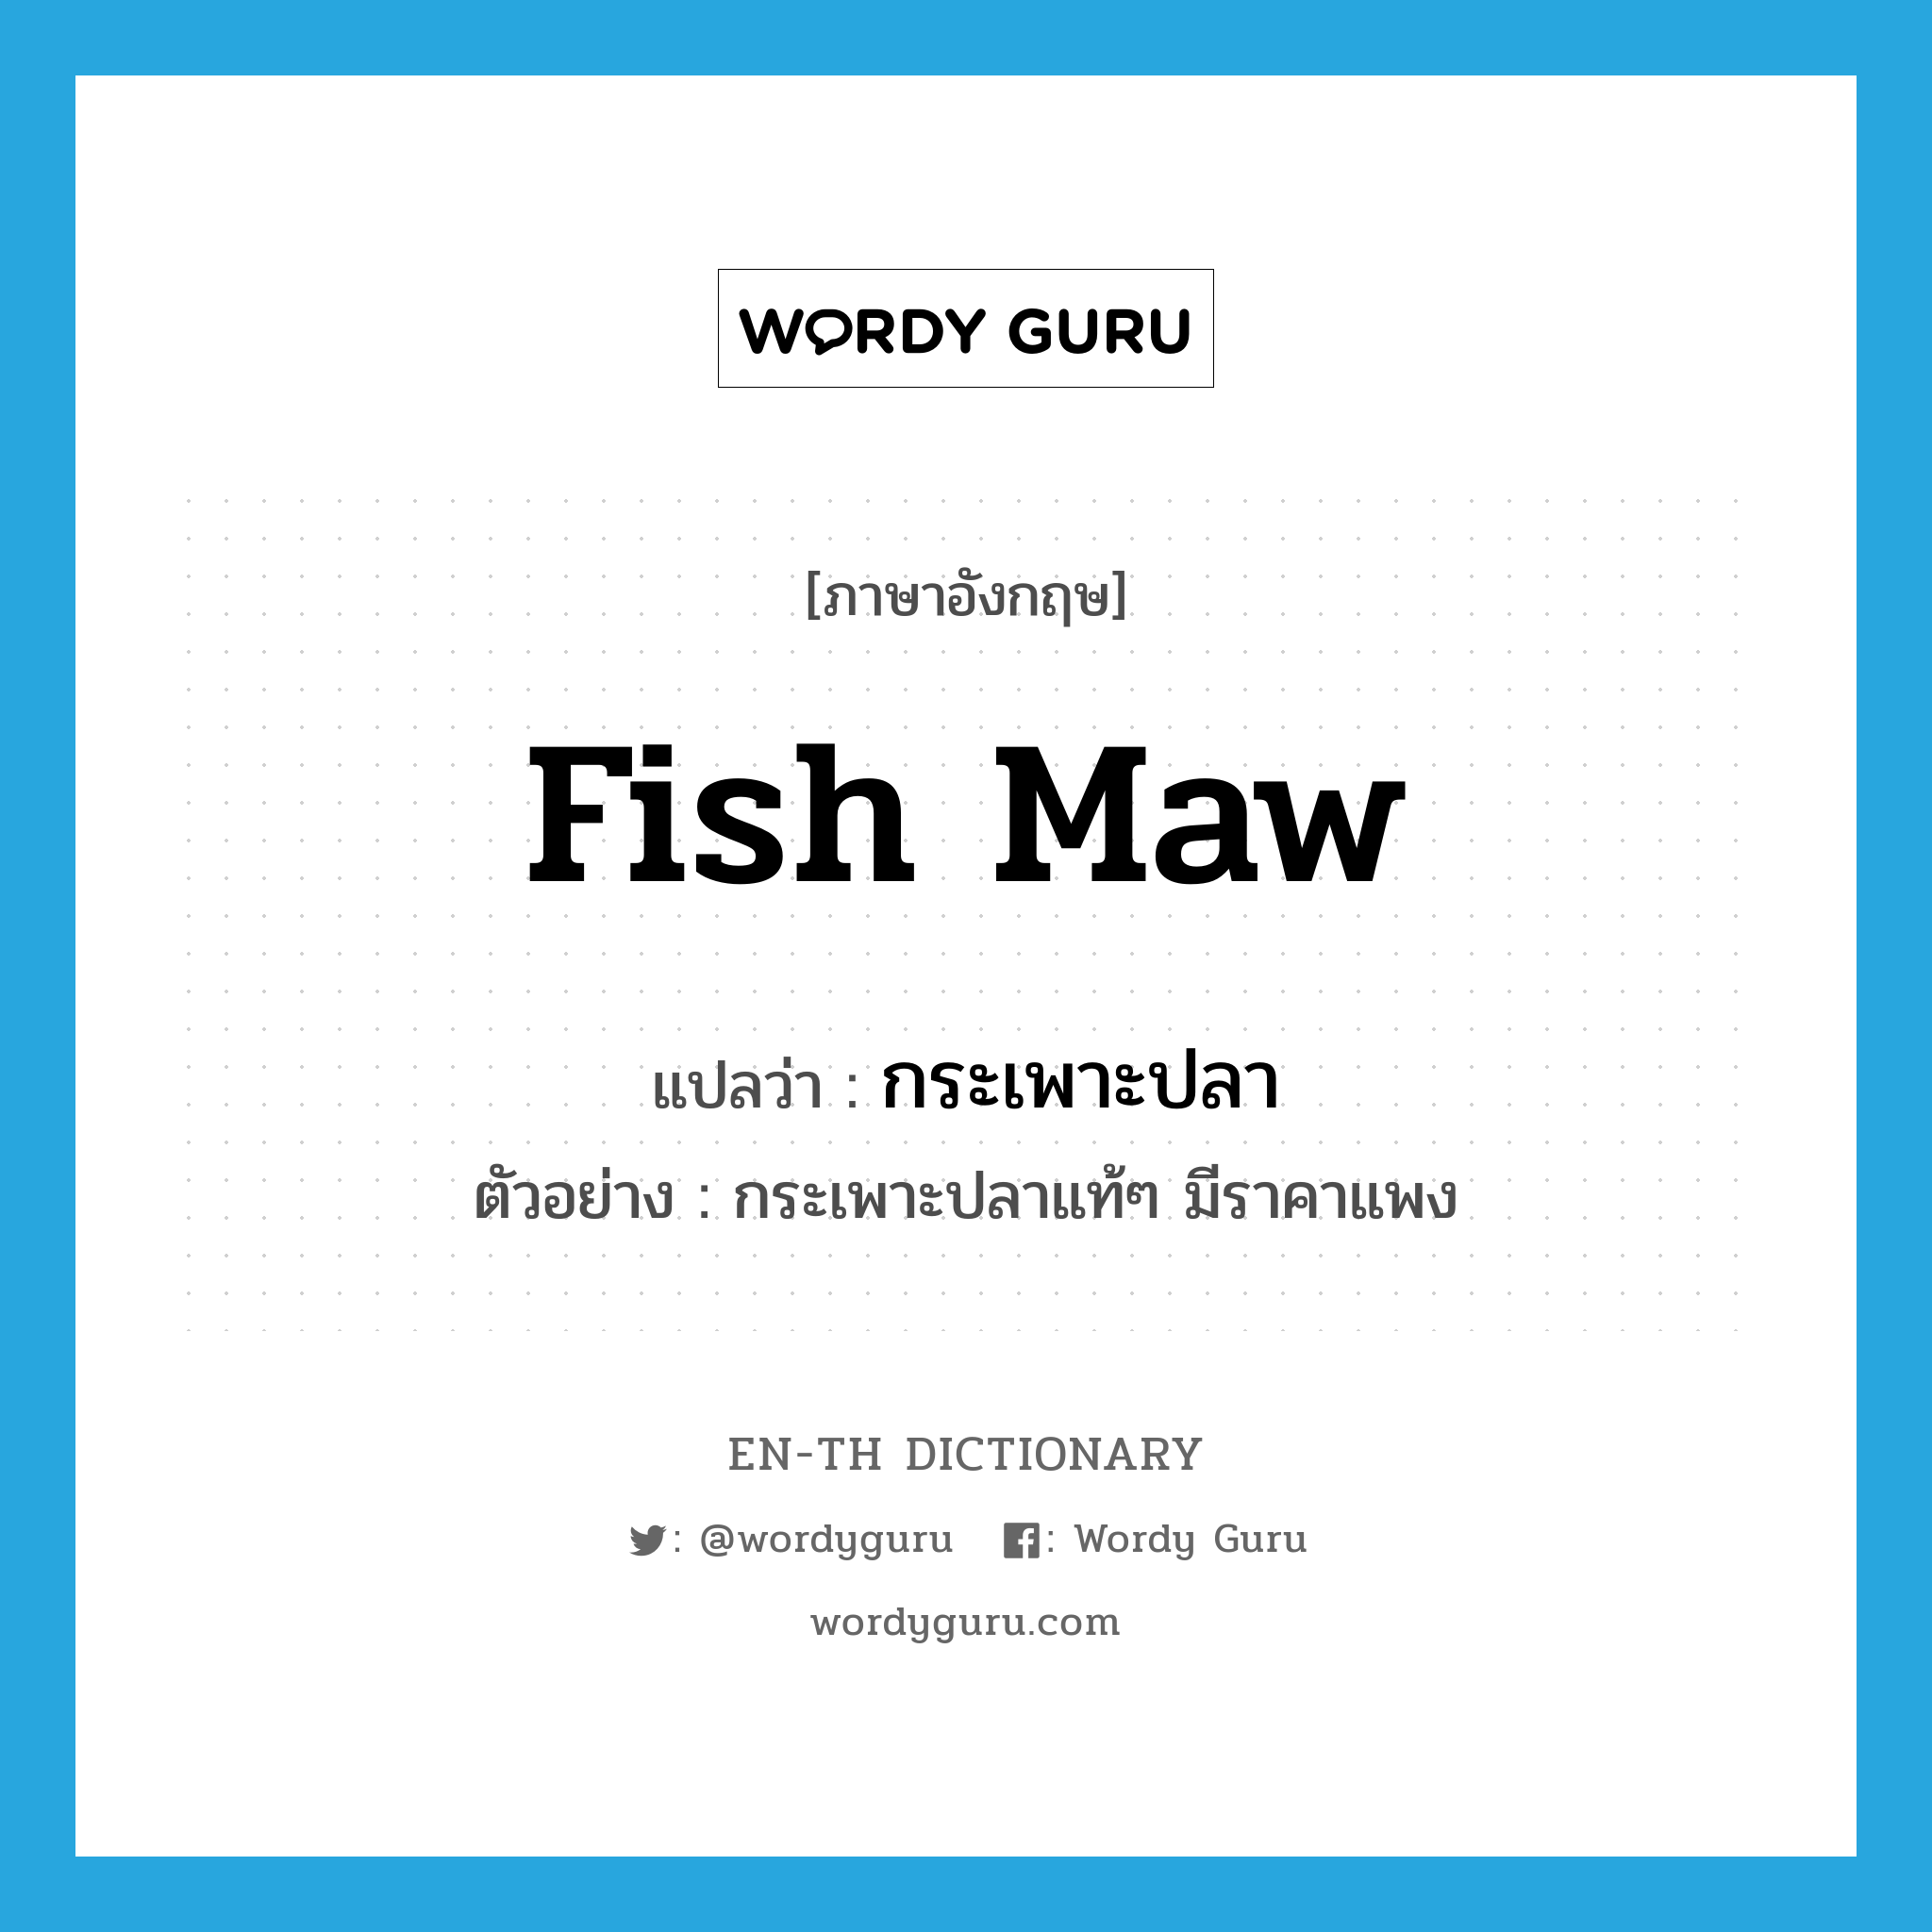 fish maw แปลว่า?, คำศัพท์ภาษาอังกฤษ fish maw แปลว่า กระเพาะปลา ประเภท N ตัวอย่าง กระเพาะปลาแท้ๆ มีราคาแพง หมวด N